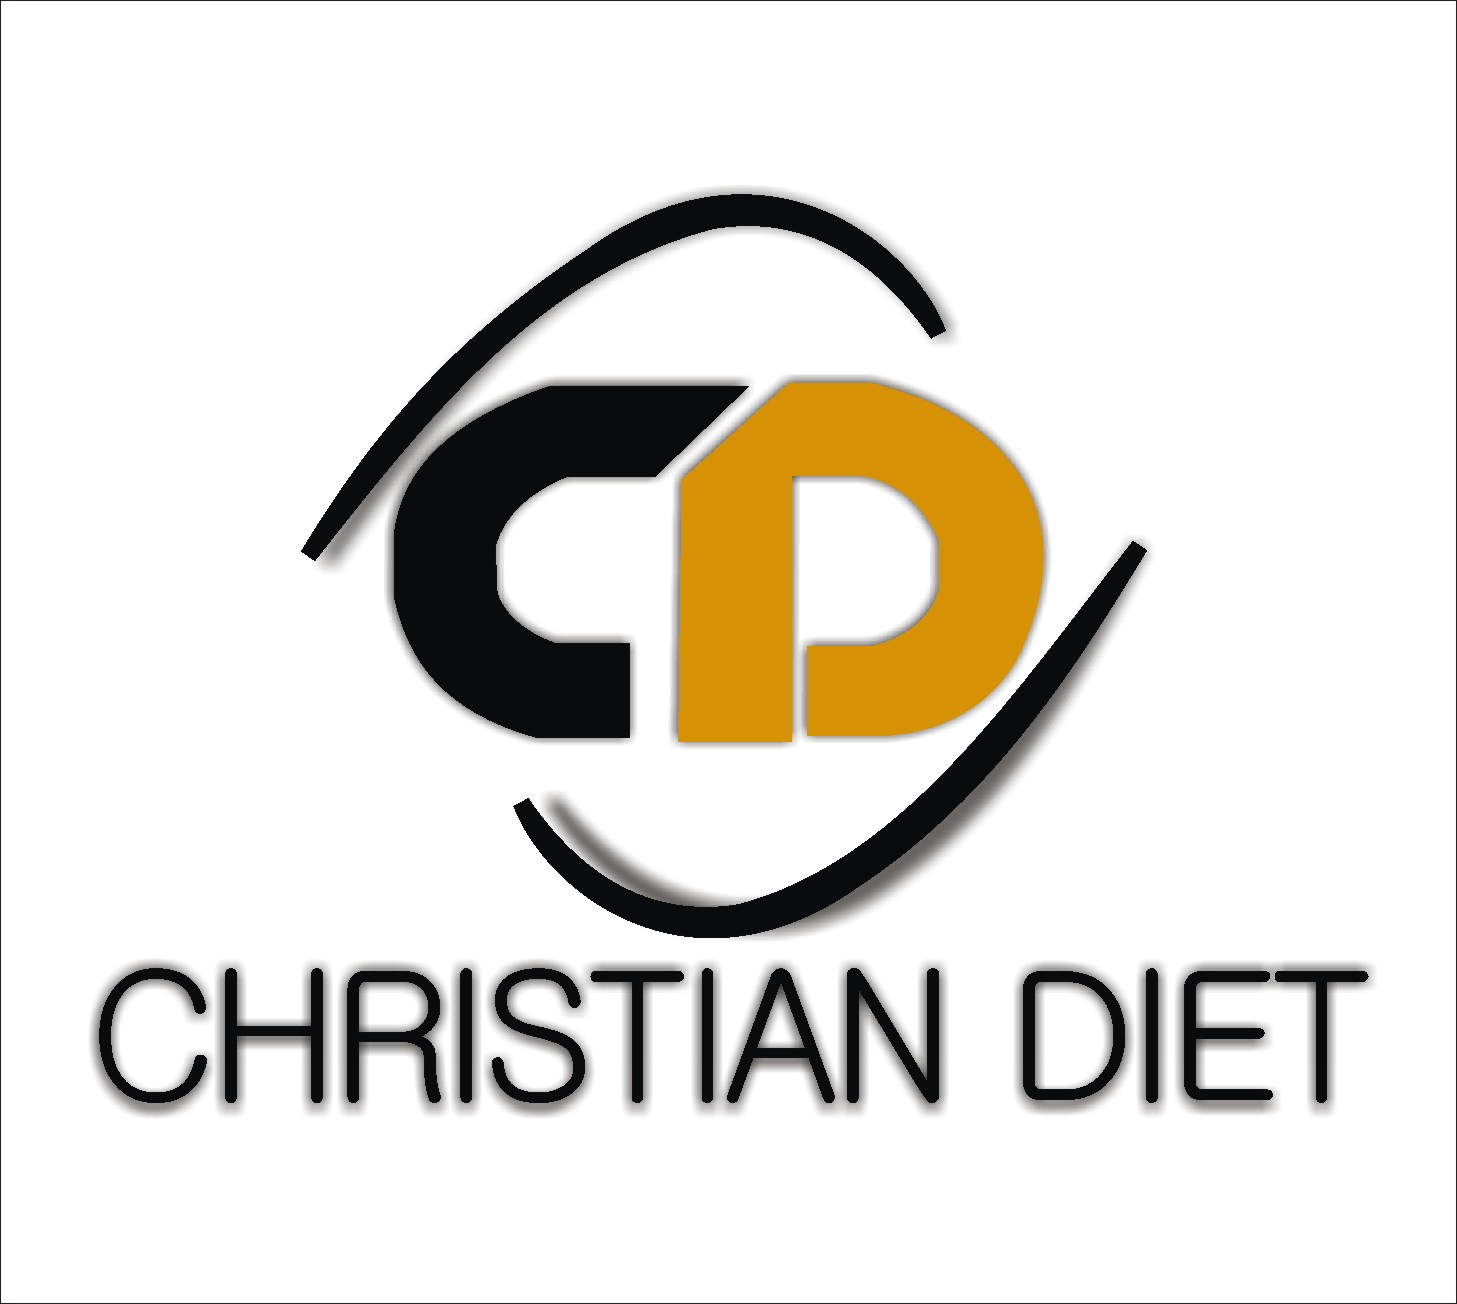 Christian Gospel songs - Christian ebooks | Christiandiet